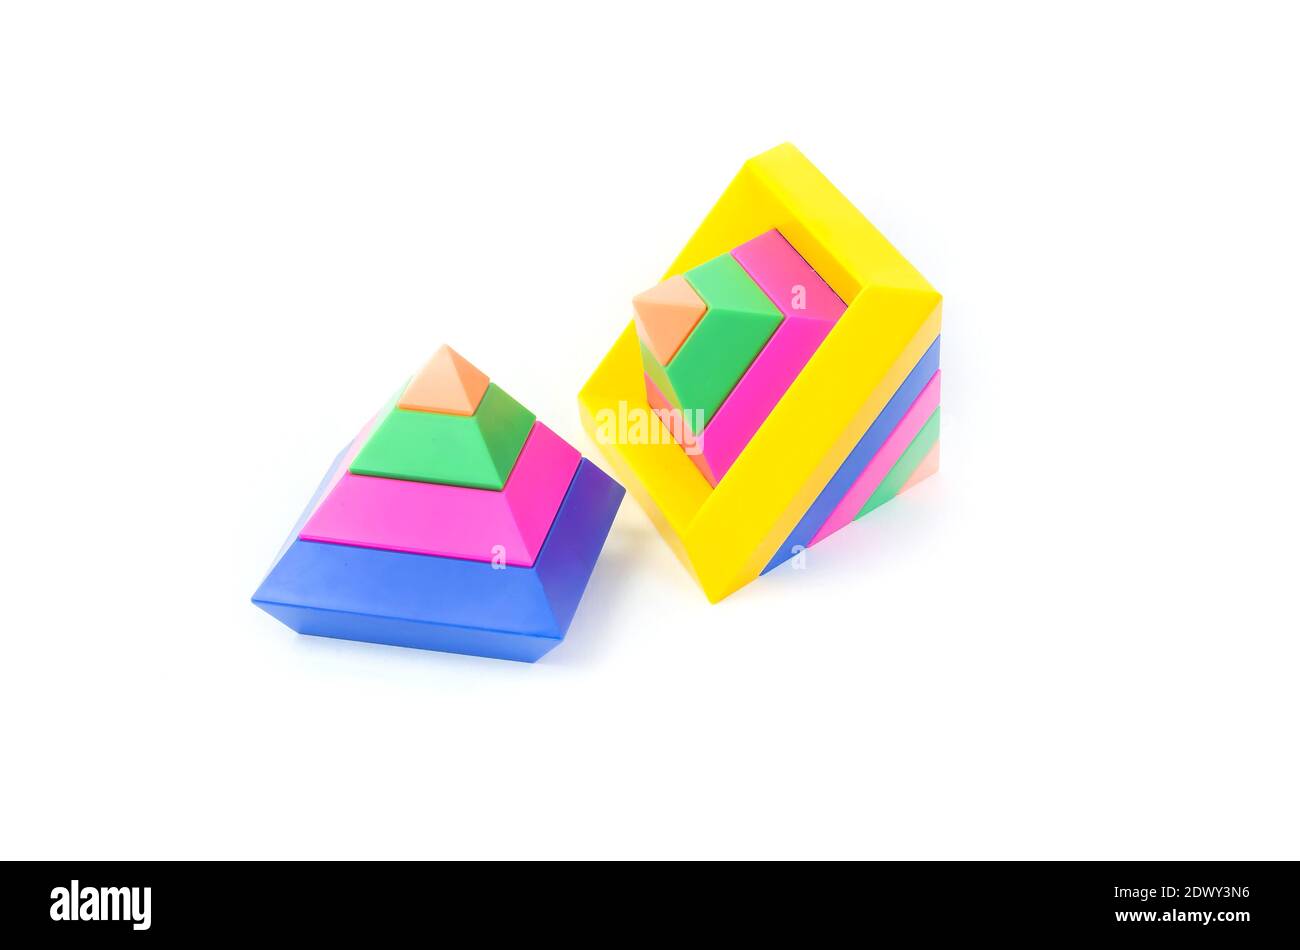 Kinder-Lernspielzeug für die Entwicklung von Motorik, mehrfarbige Pyramiden, auf weißem Hintergrund. Stockfoto